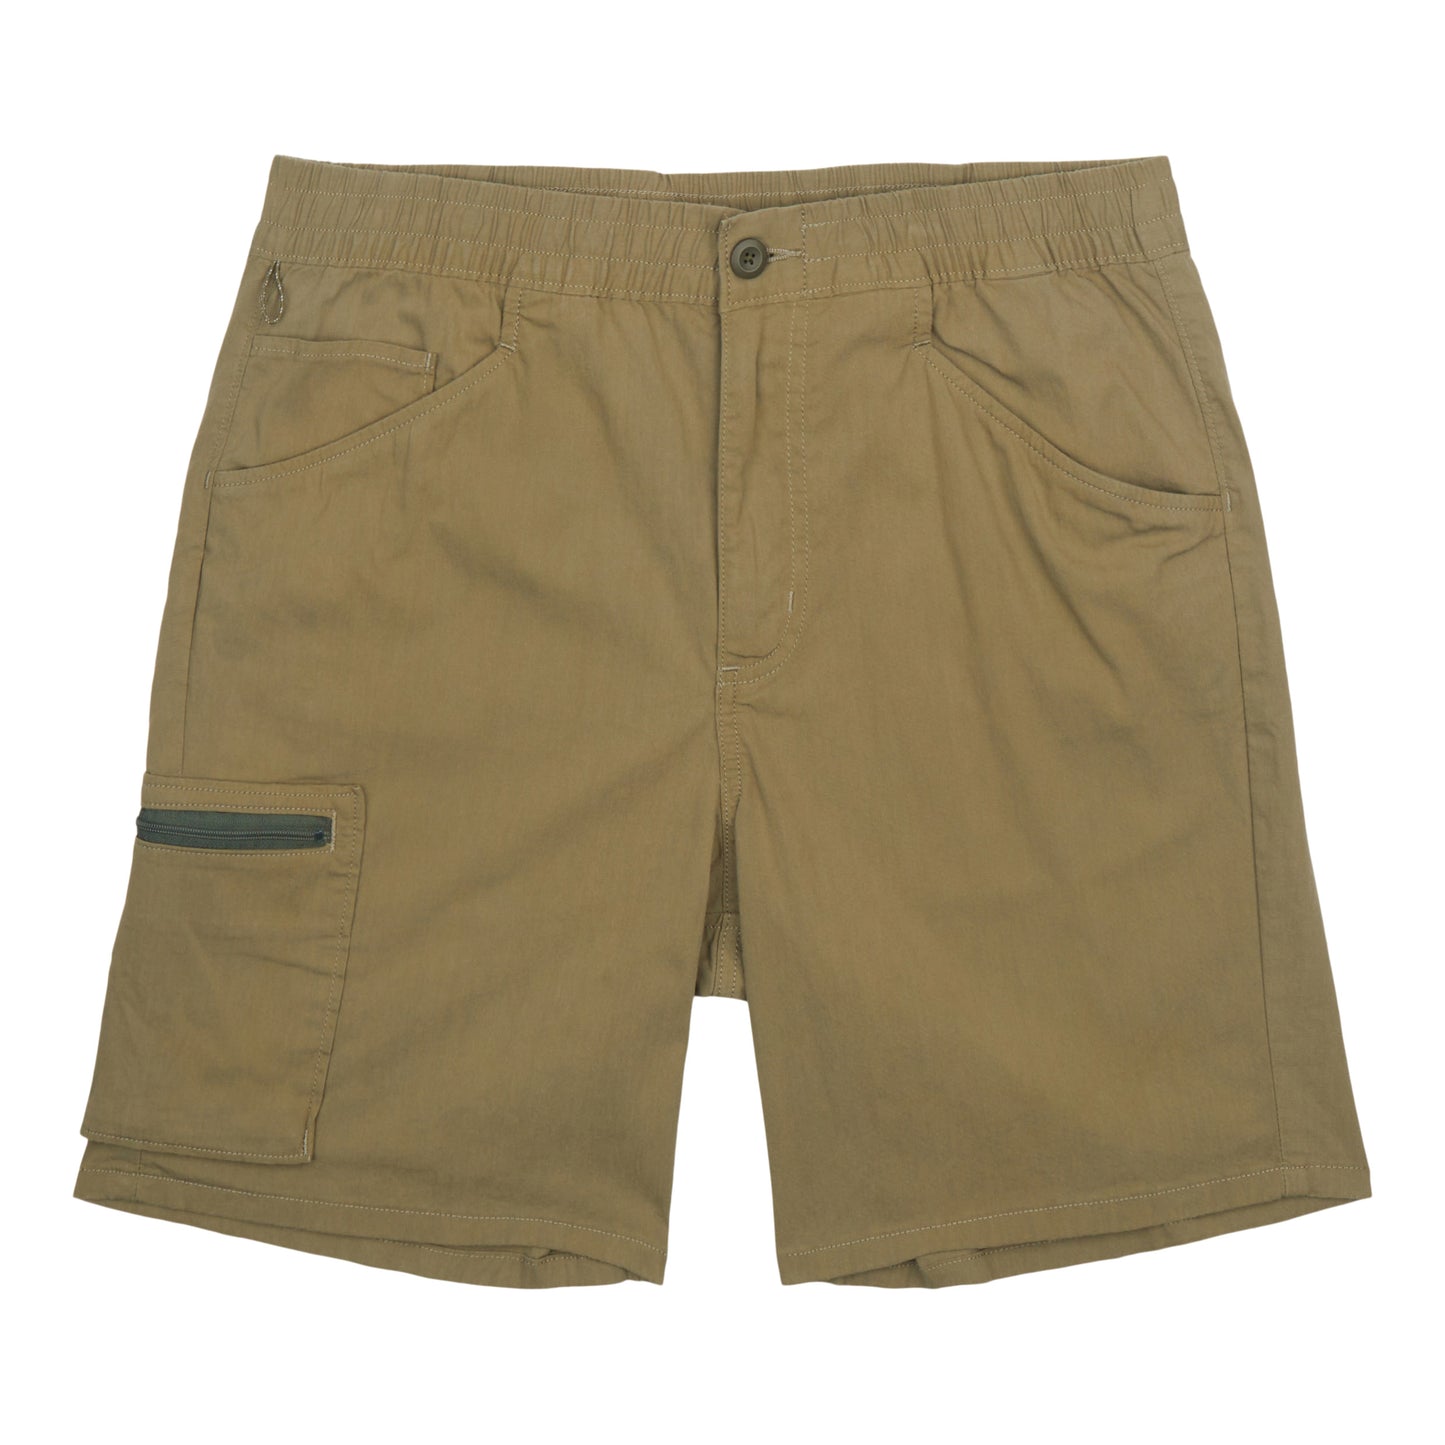 Men's Nomader Shorts